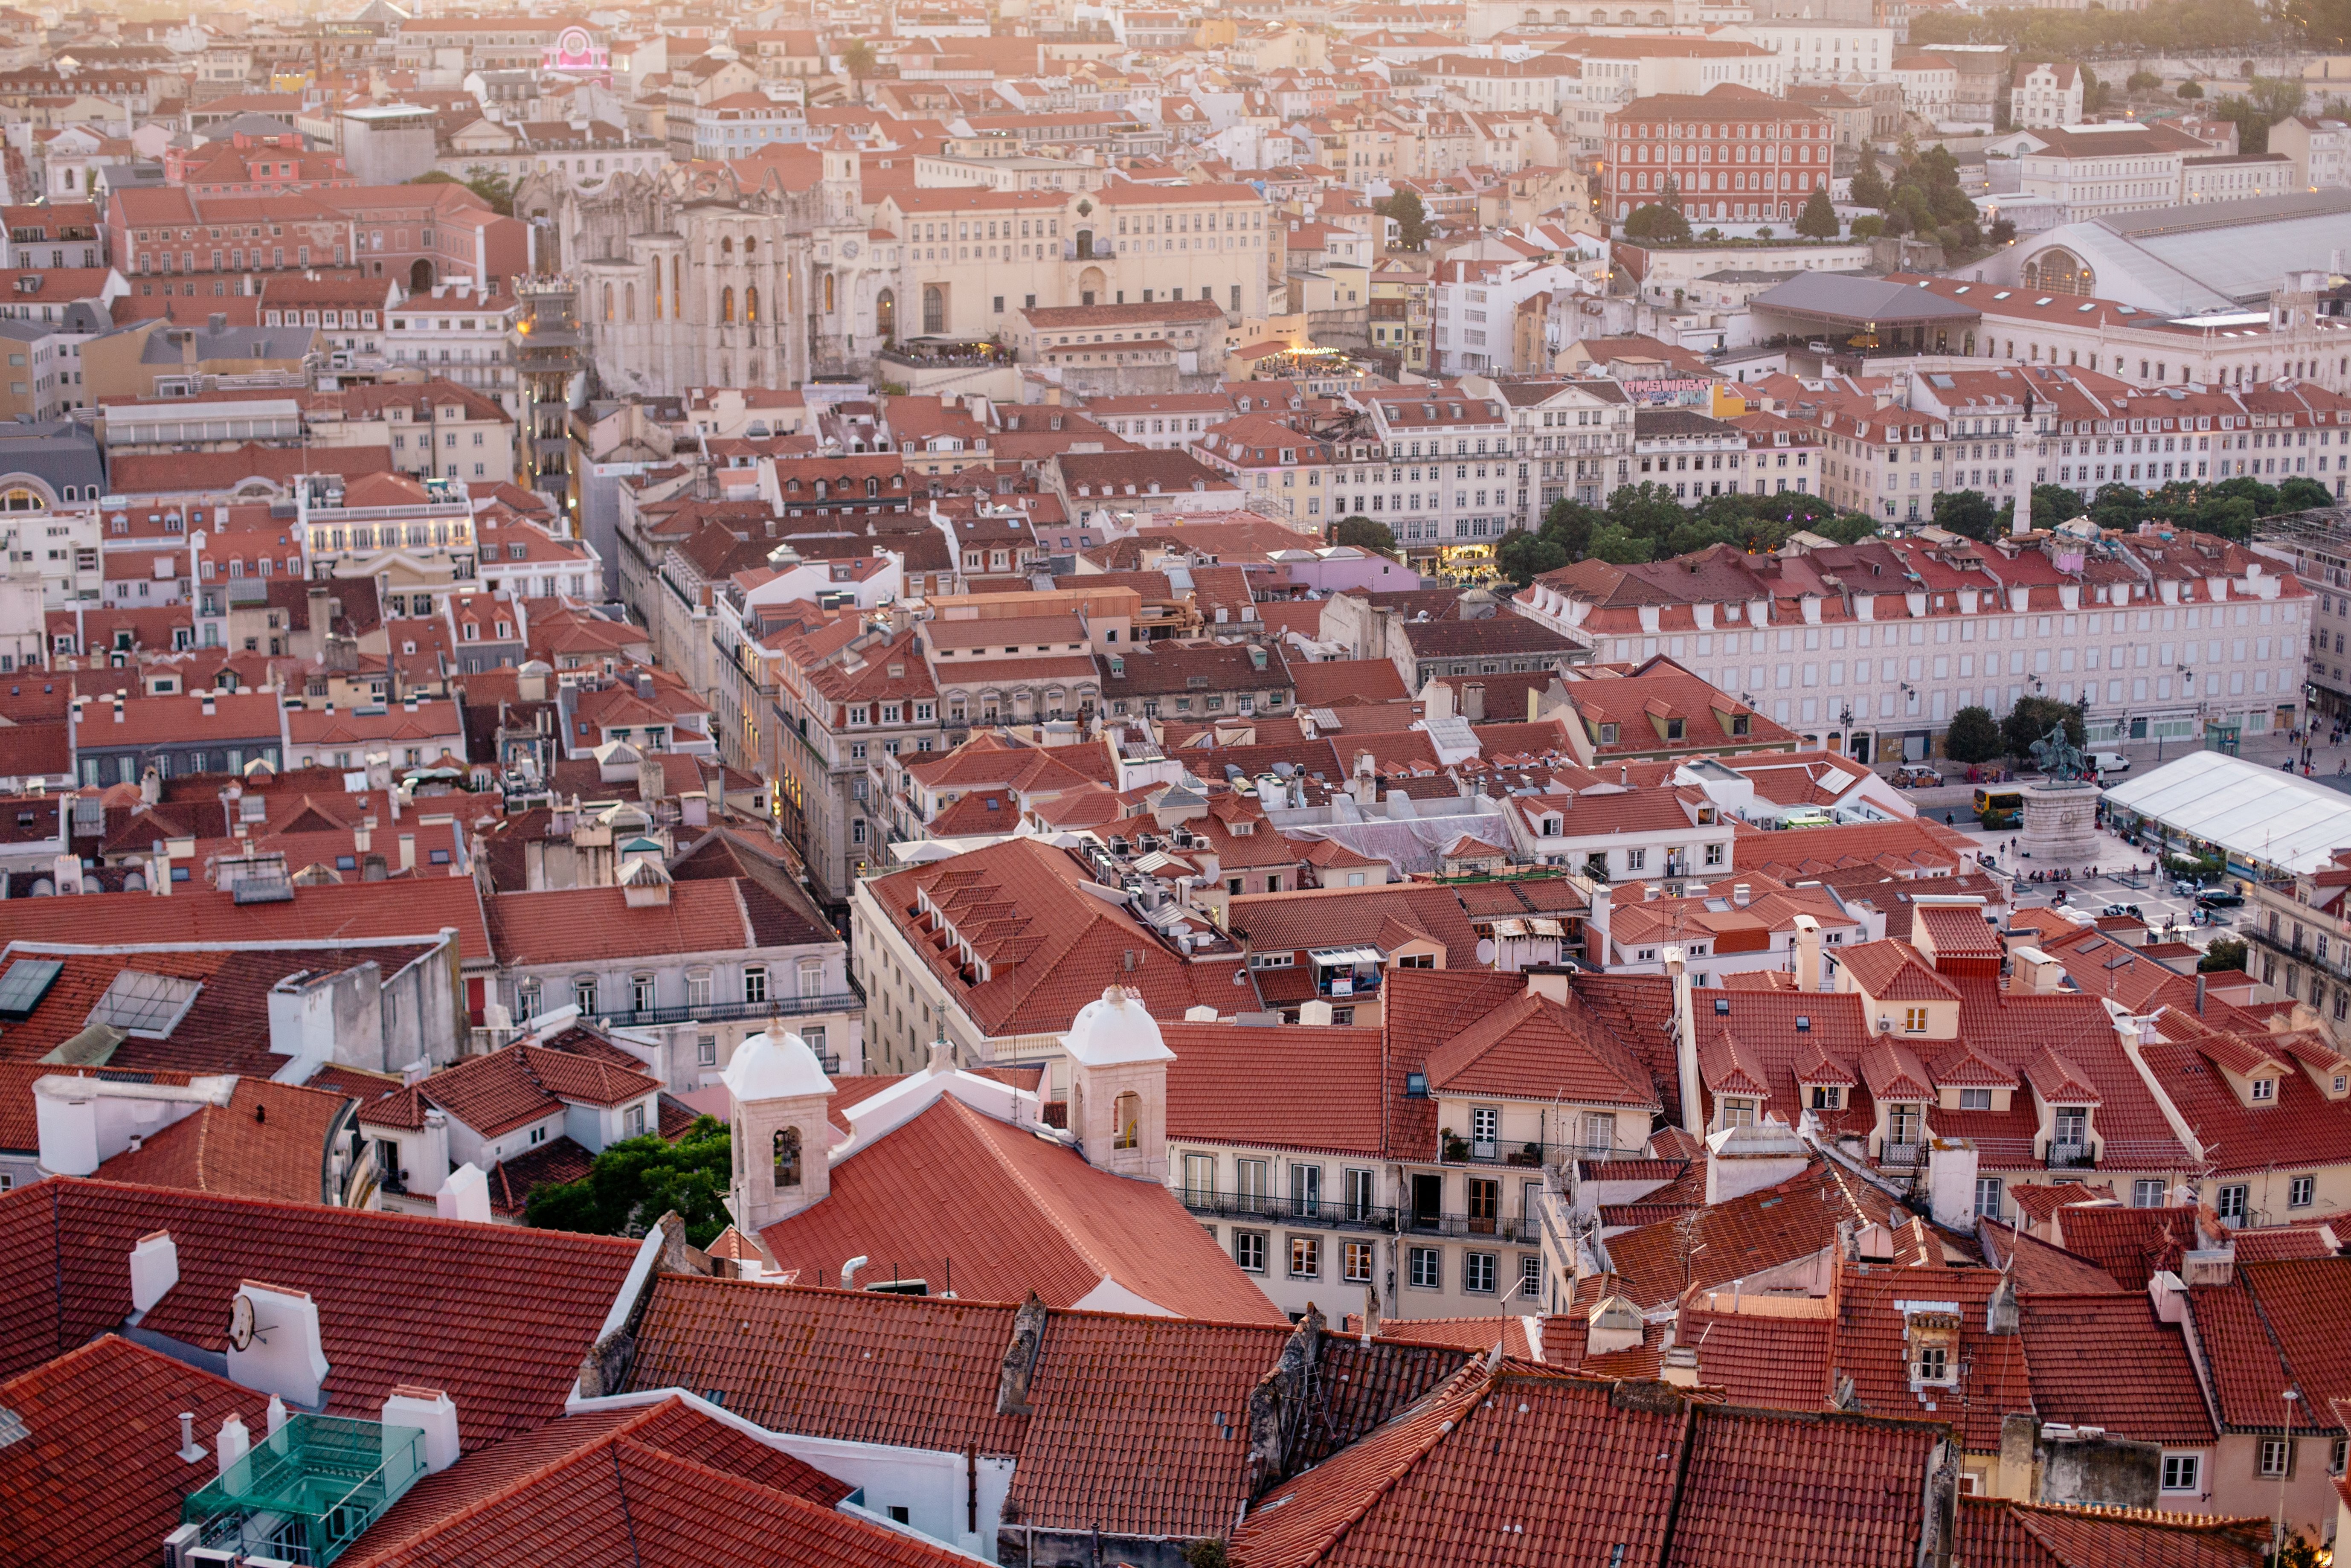 Vista aérea de los tejados de arcilla roja de Lisboa Foto